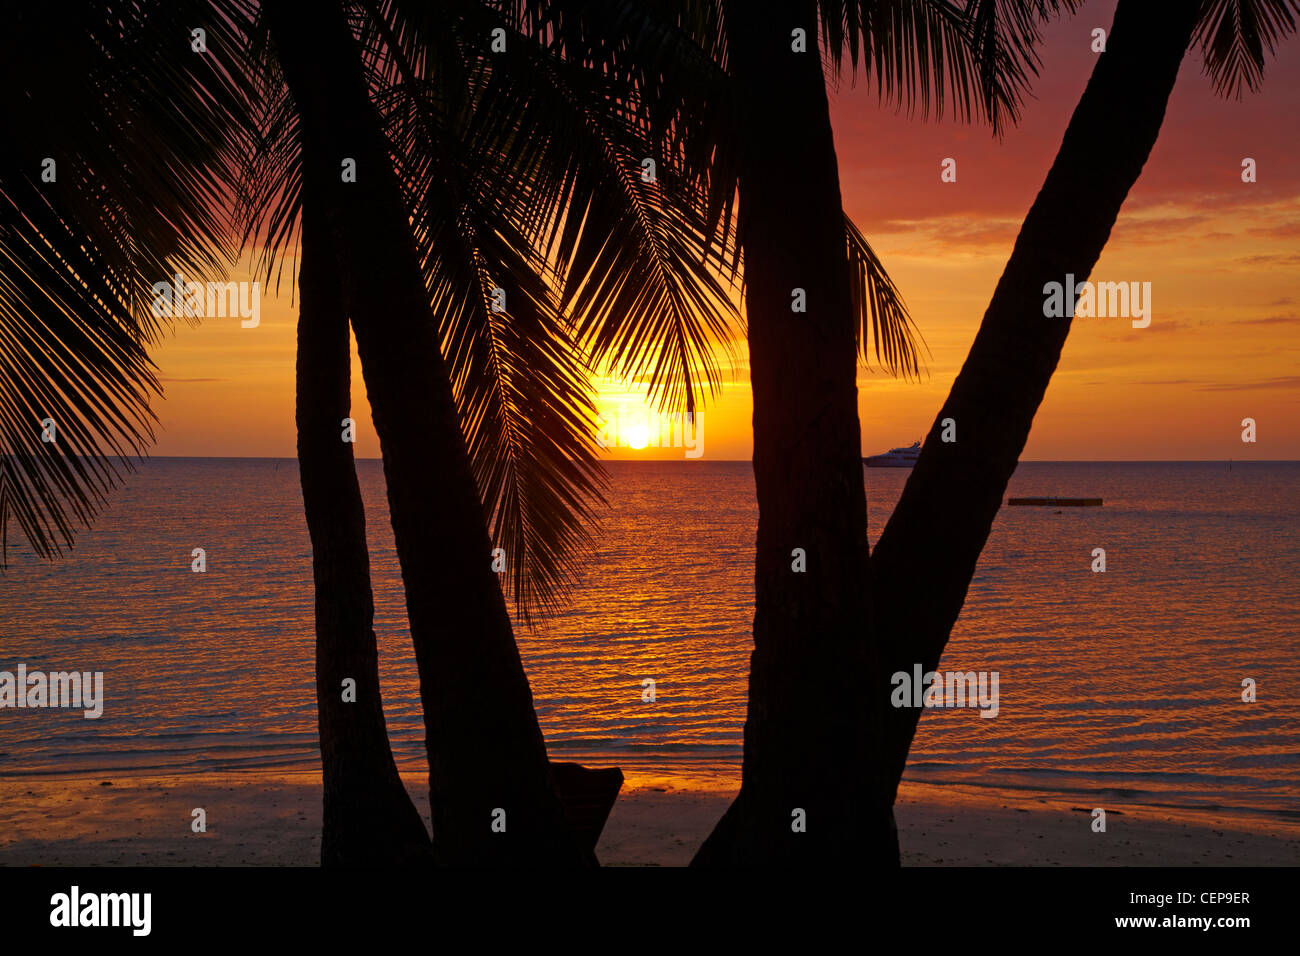 Alberi di palma e al tramonto, Plantation Island Resort, Malolo Lailai Island, Isole della Mamanuca, Figi e Sud Pacifico Foto Stock